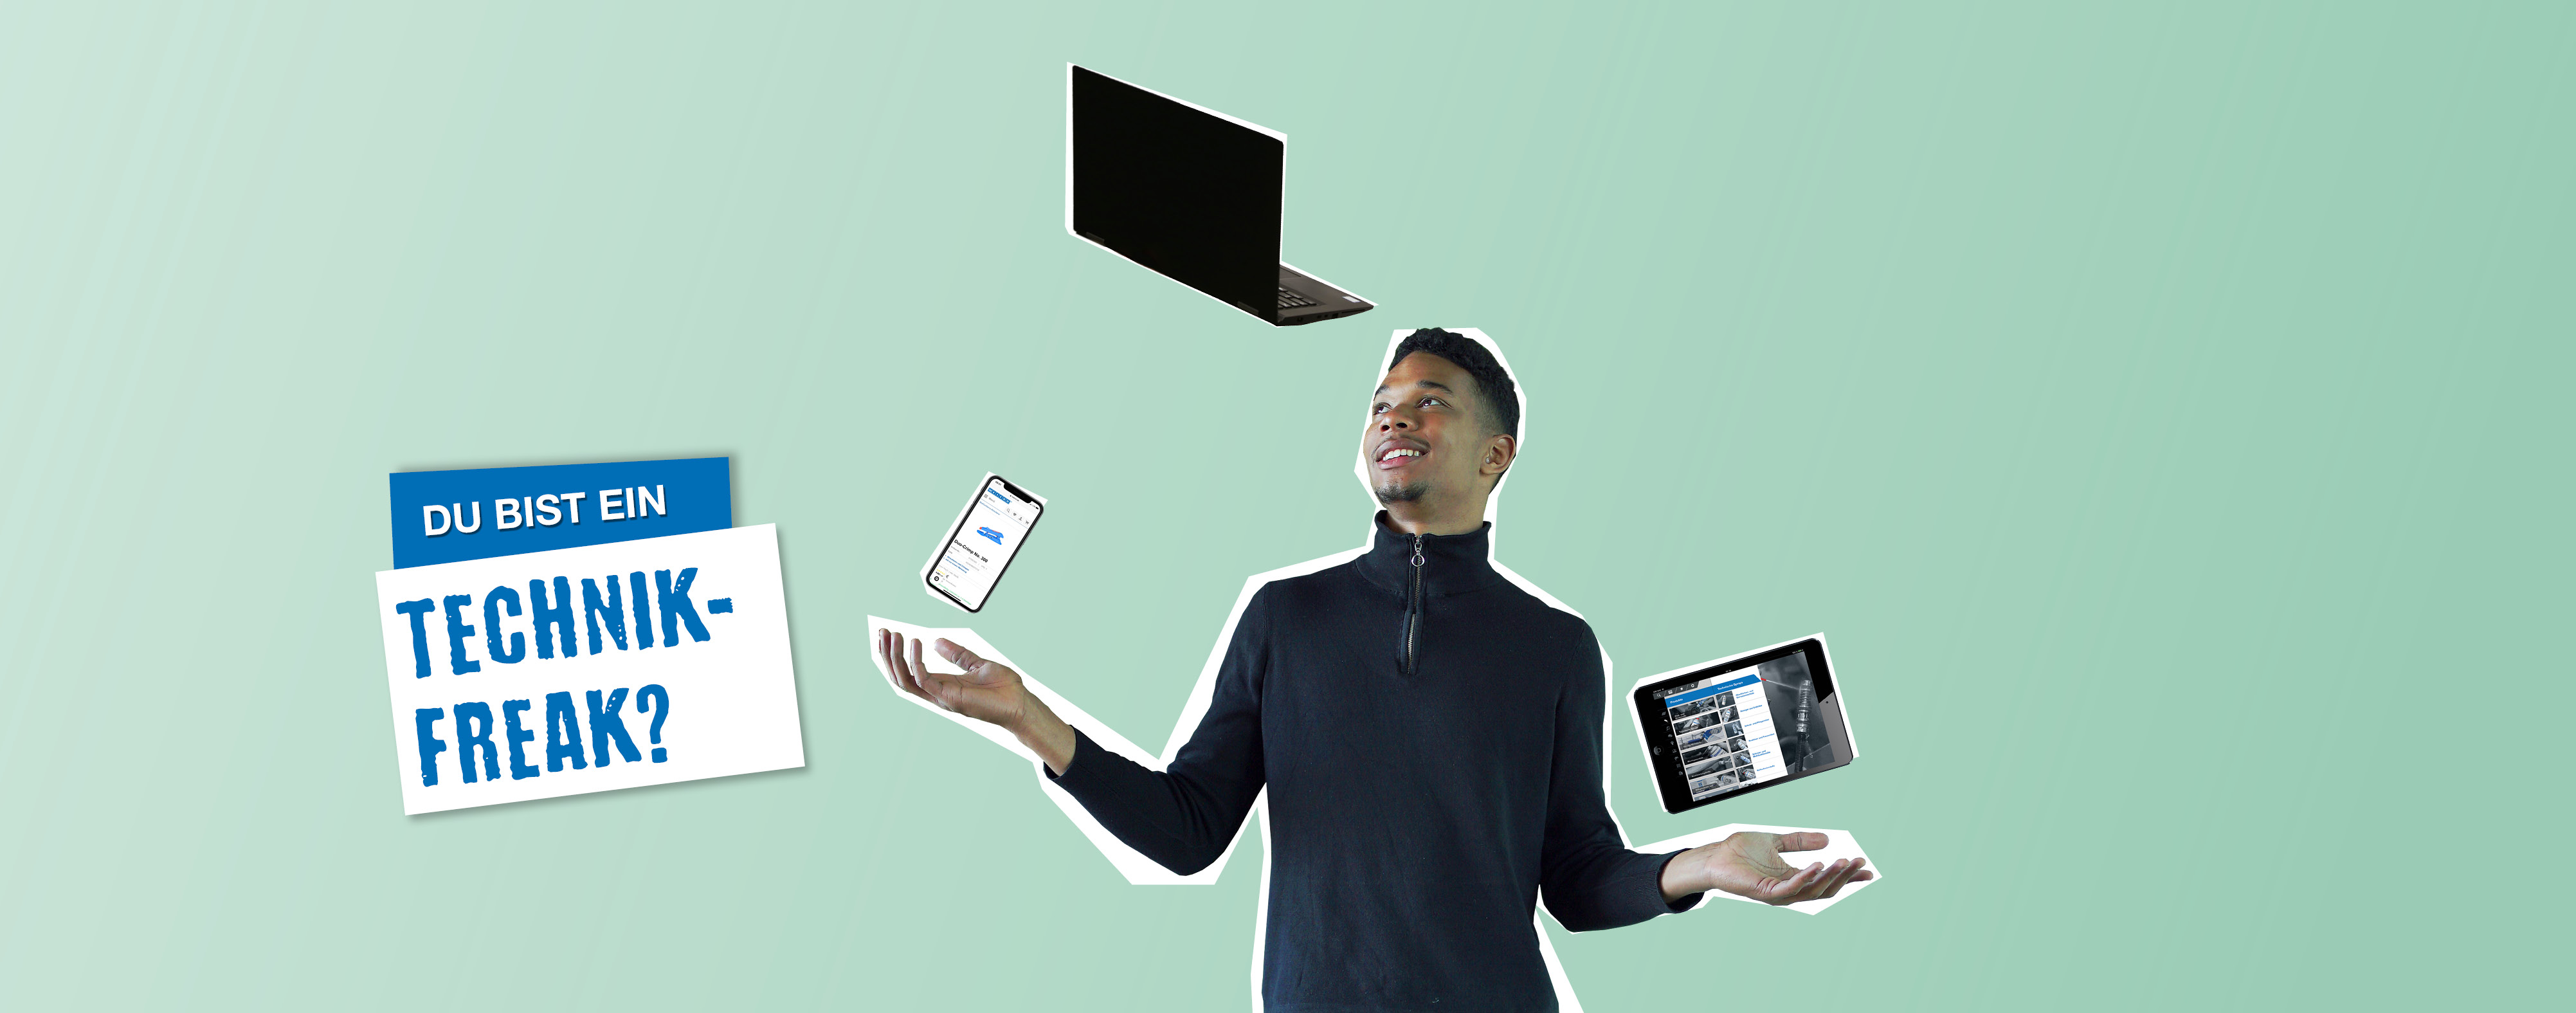 hellgrüner Hintergrund, junger Mann steht in der Mitte und jongliert ein Handy, Laptop und Tablet, daneben steht "Du bist ein Technikfreak?"